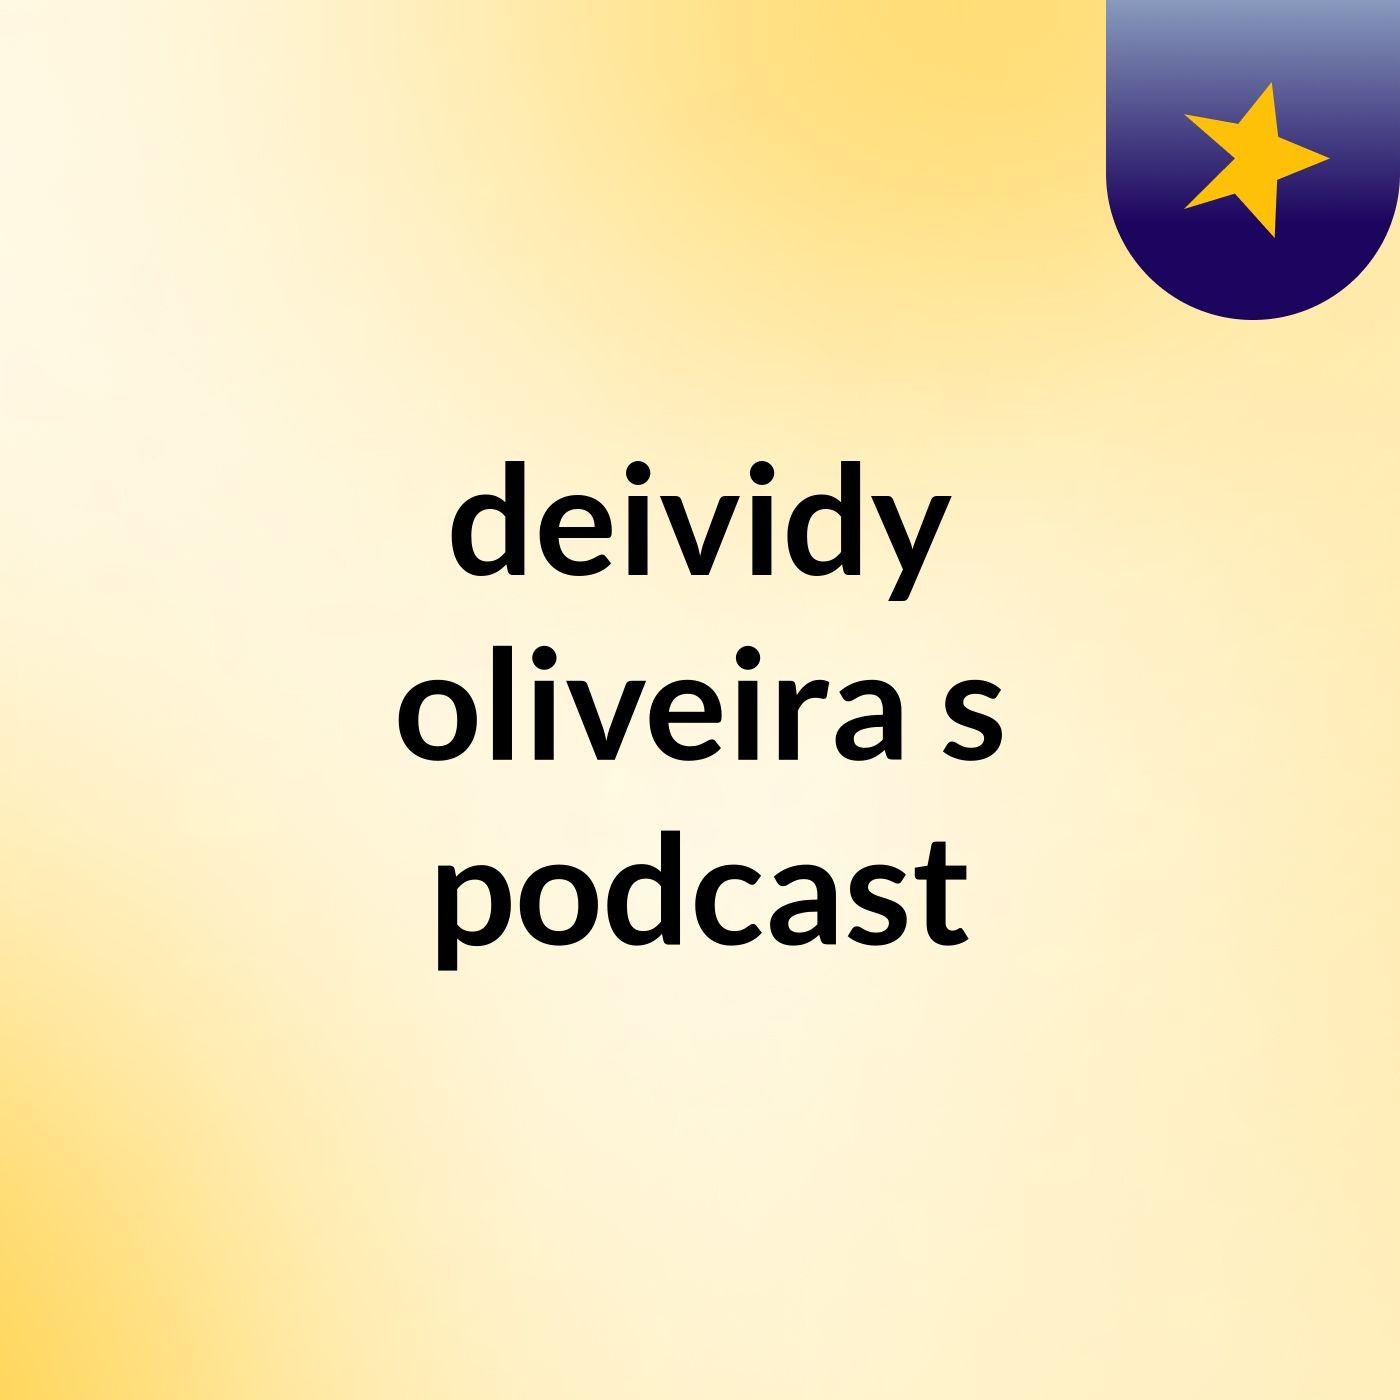 deividy oliveira's podcast